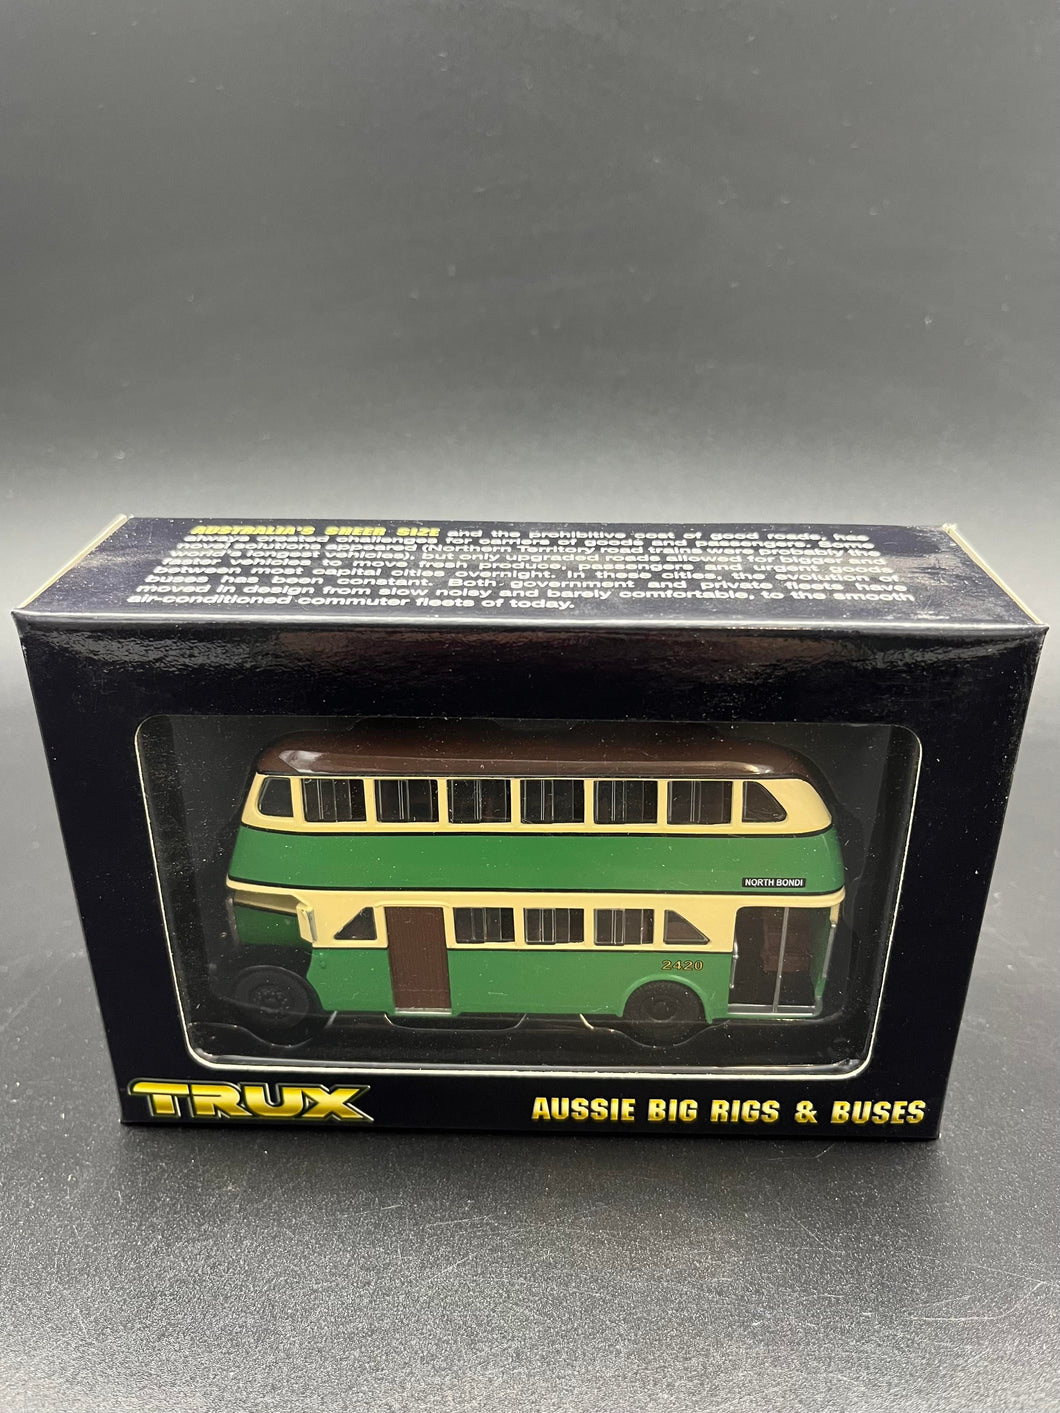 TRUX - 1950 AEC Regent 111 Double Decker Bus - Route 380 North Bondi